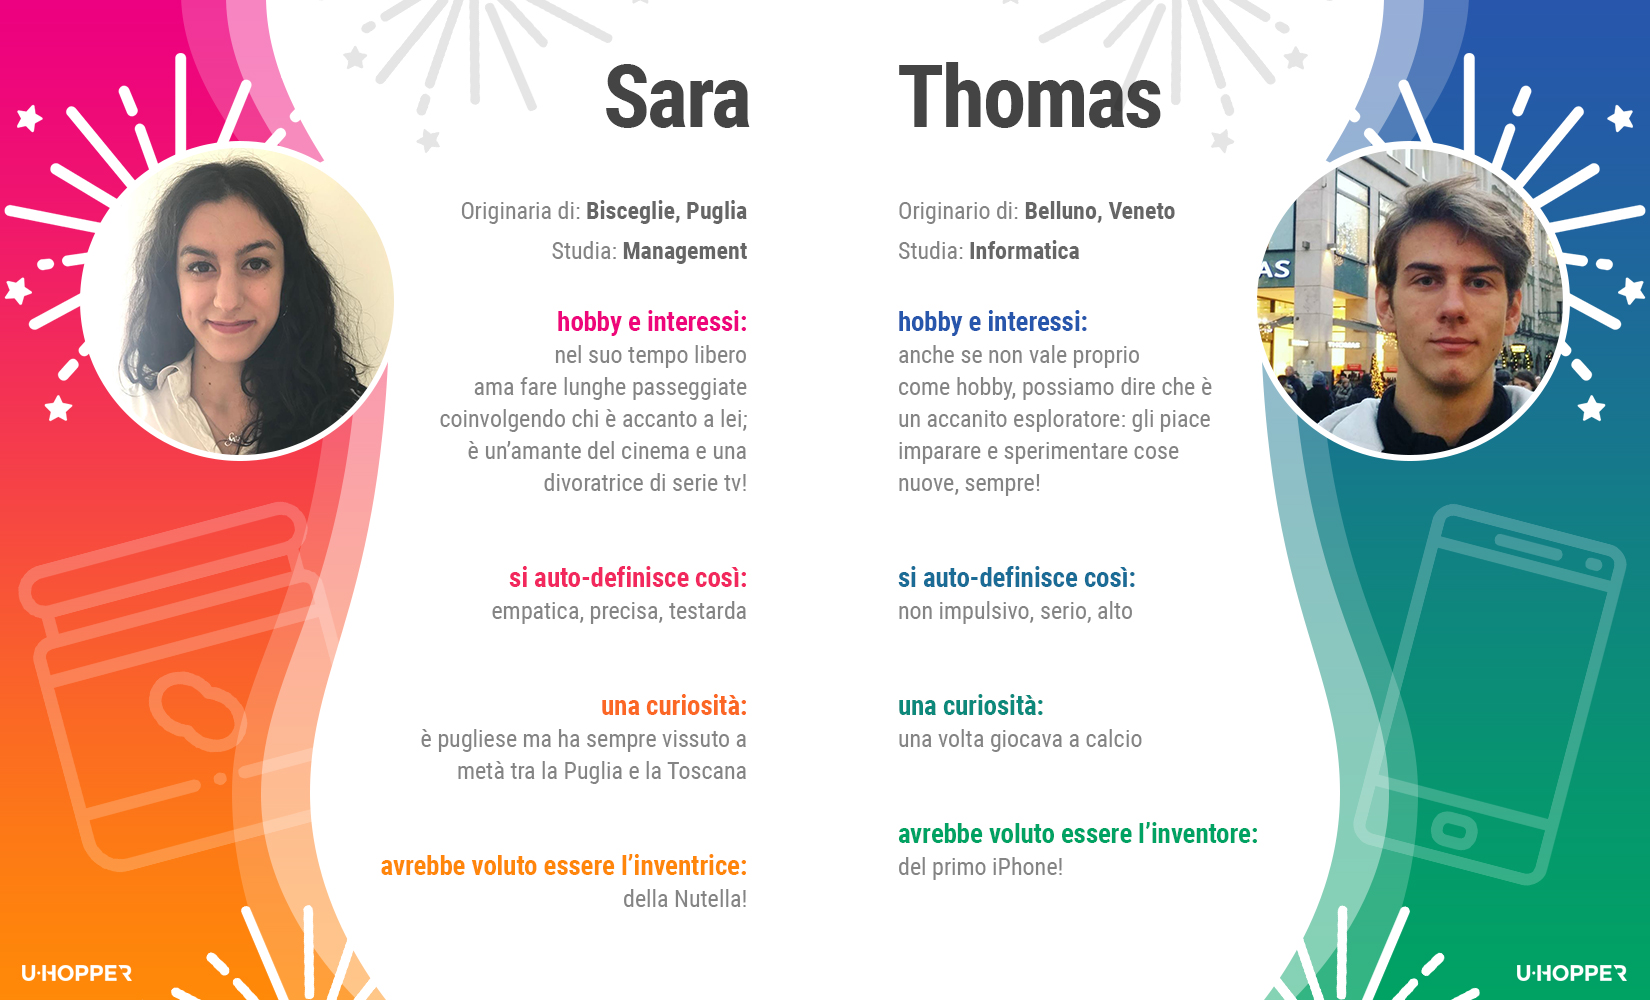 Sara e Thomas